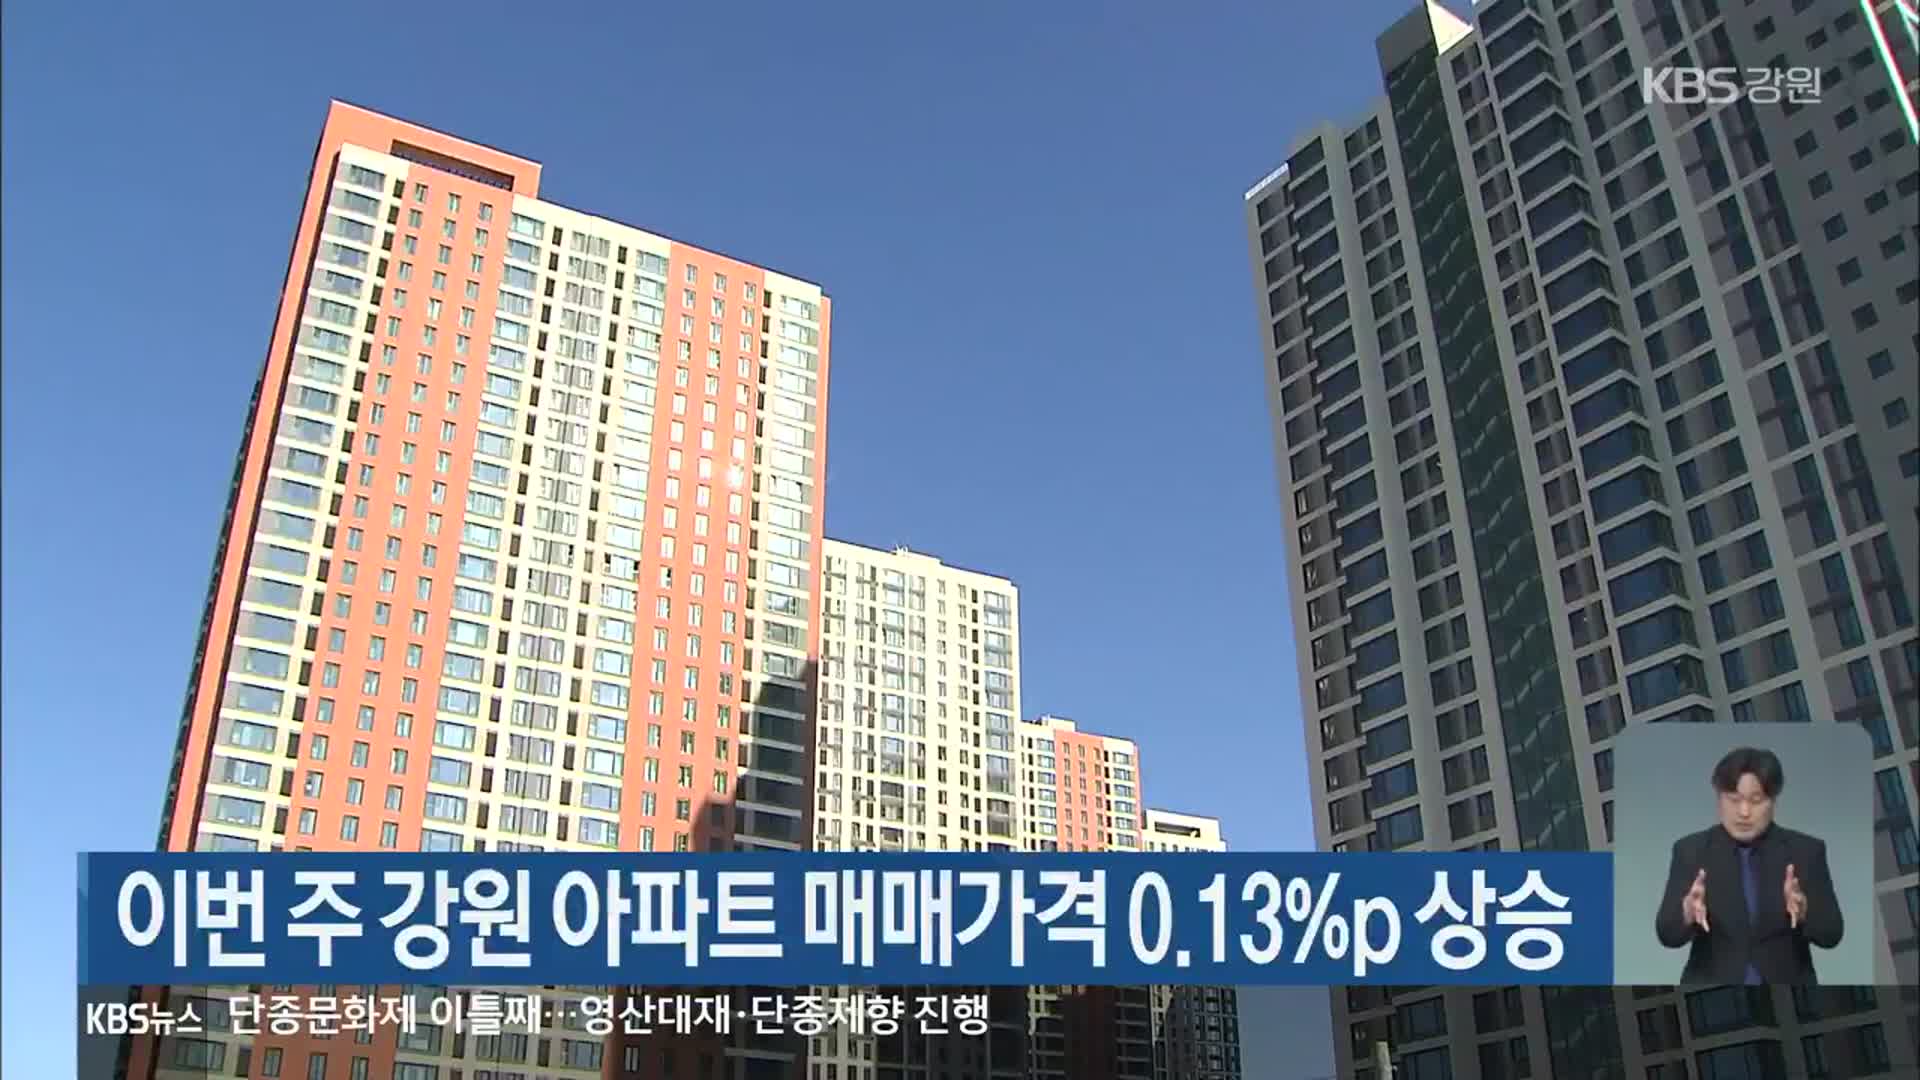 이번 주 강원 아파트 매매가격 0.13%p 상승